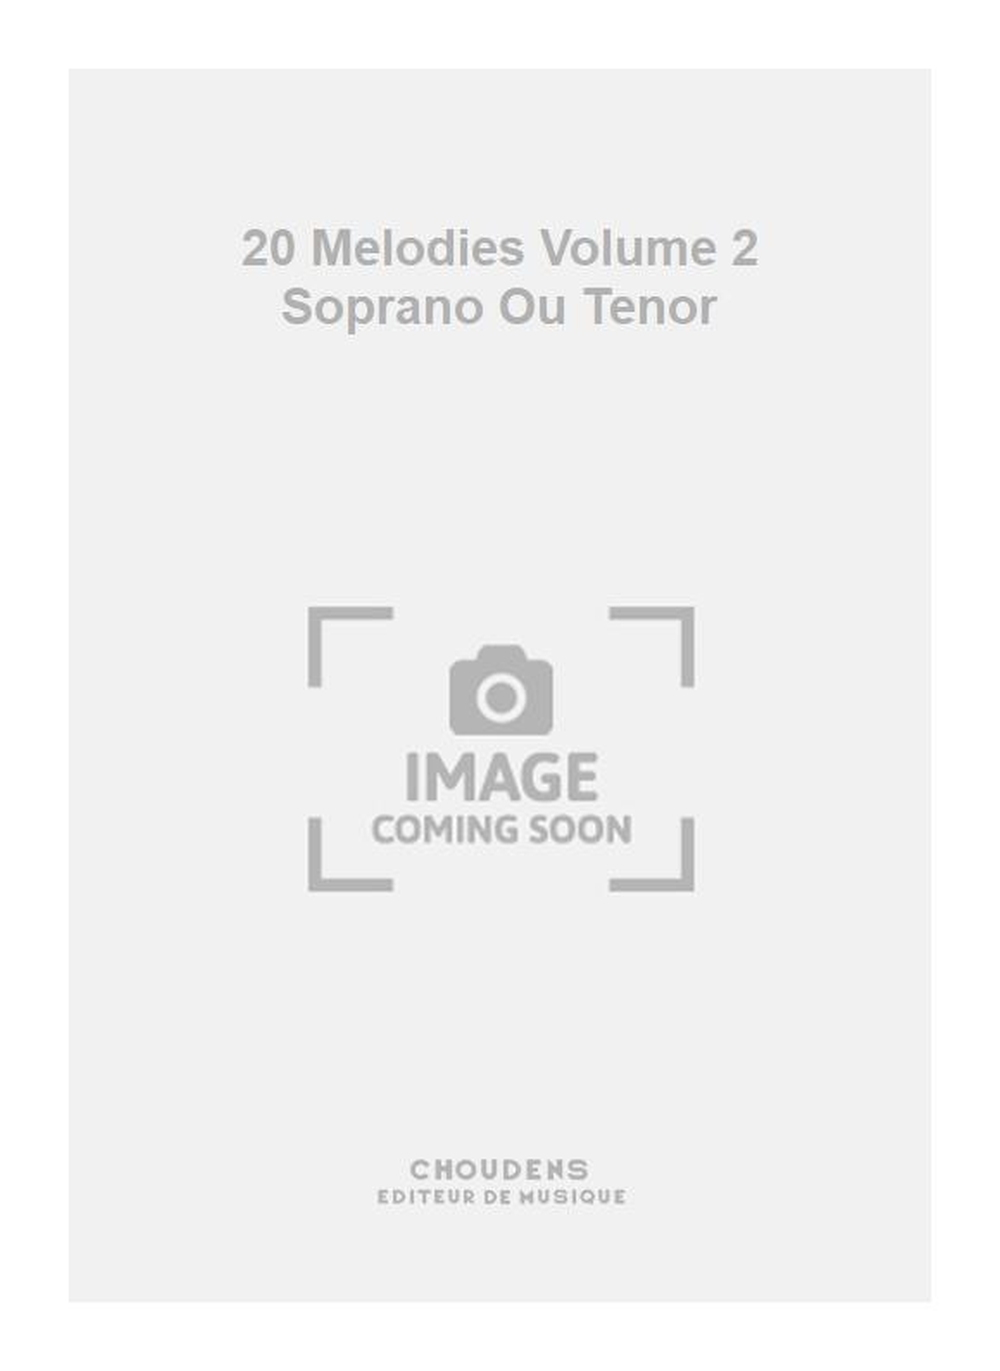 Charles Gounod: 20 Melodies Volume 2 Soprano Ou Tenor